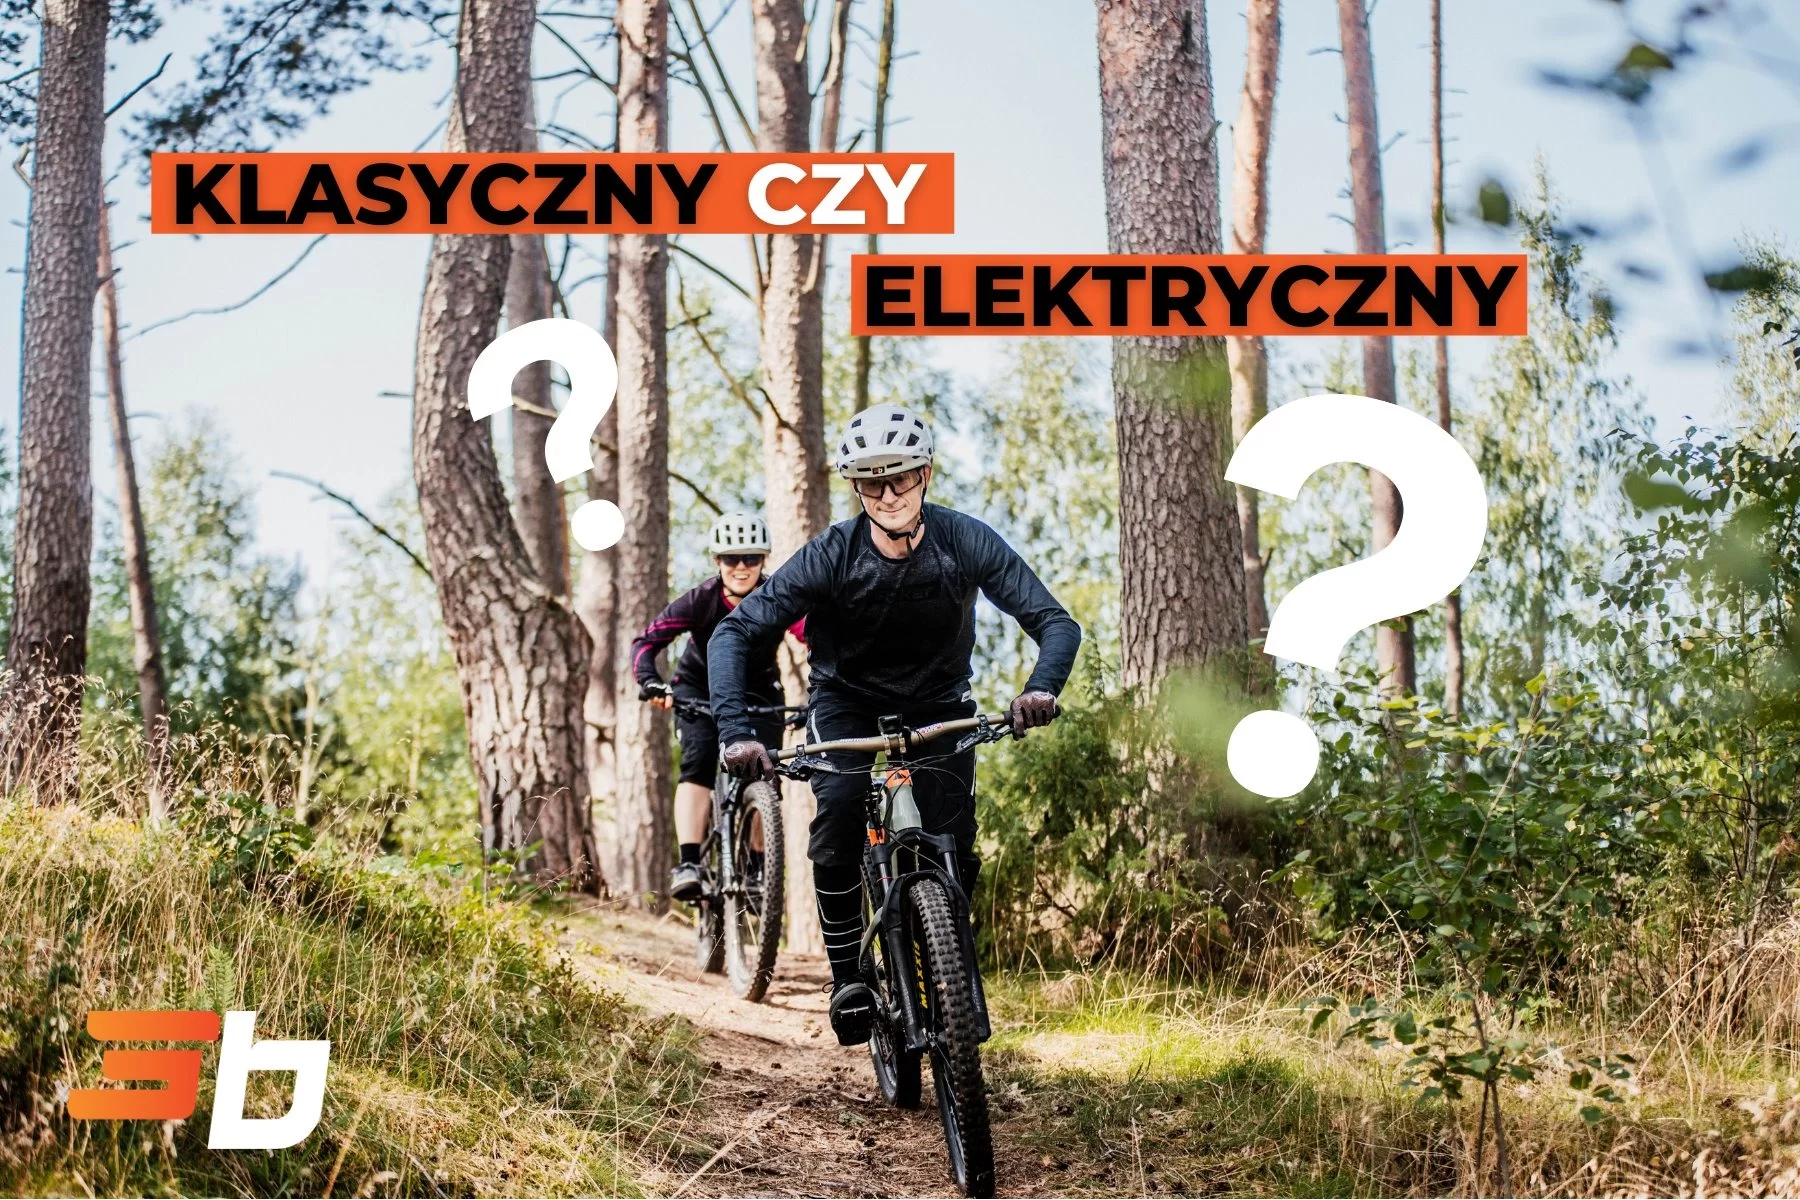 Klasyczny czy elektryczny? Jaki rower wybierasz?